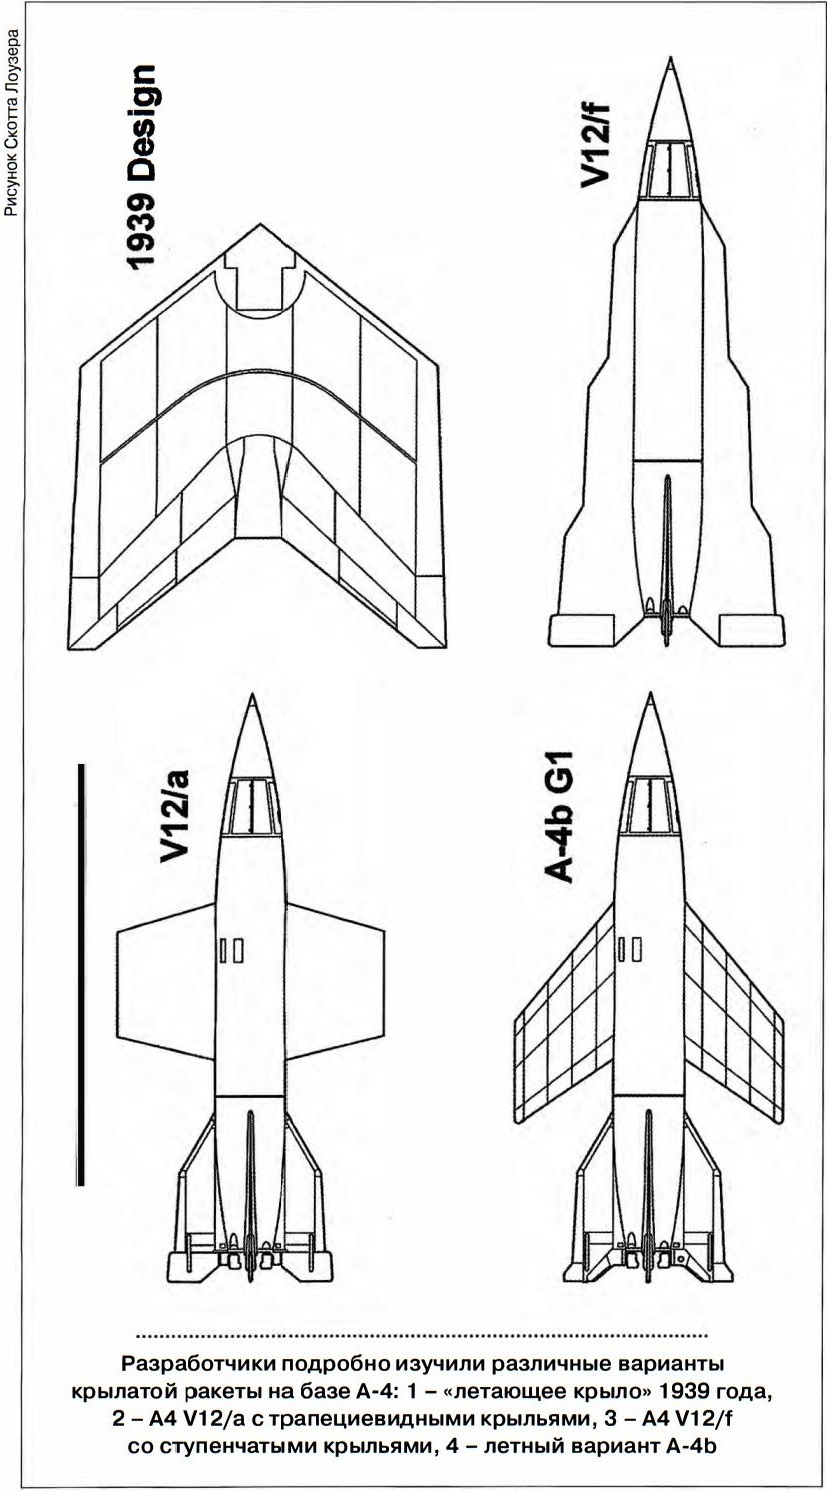 Причина появления советской Бури или американский вариант развития Фау-2 - 2